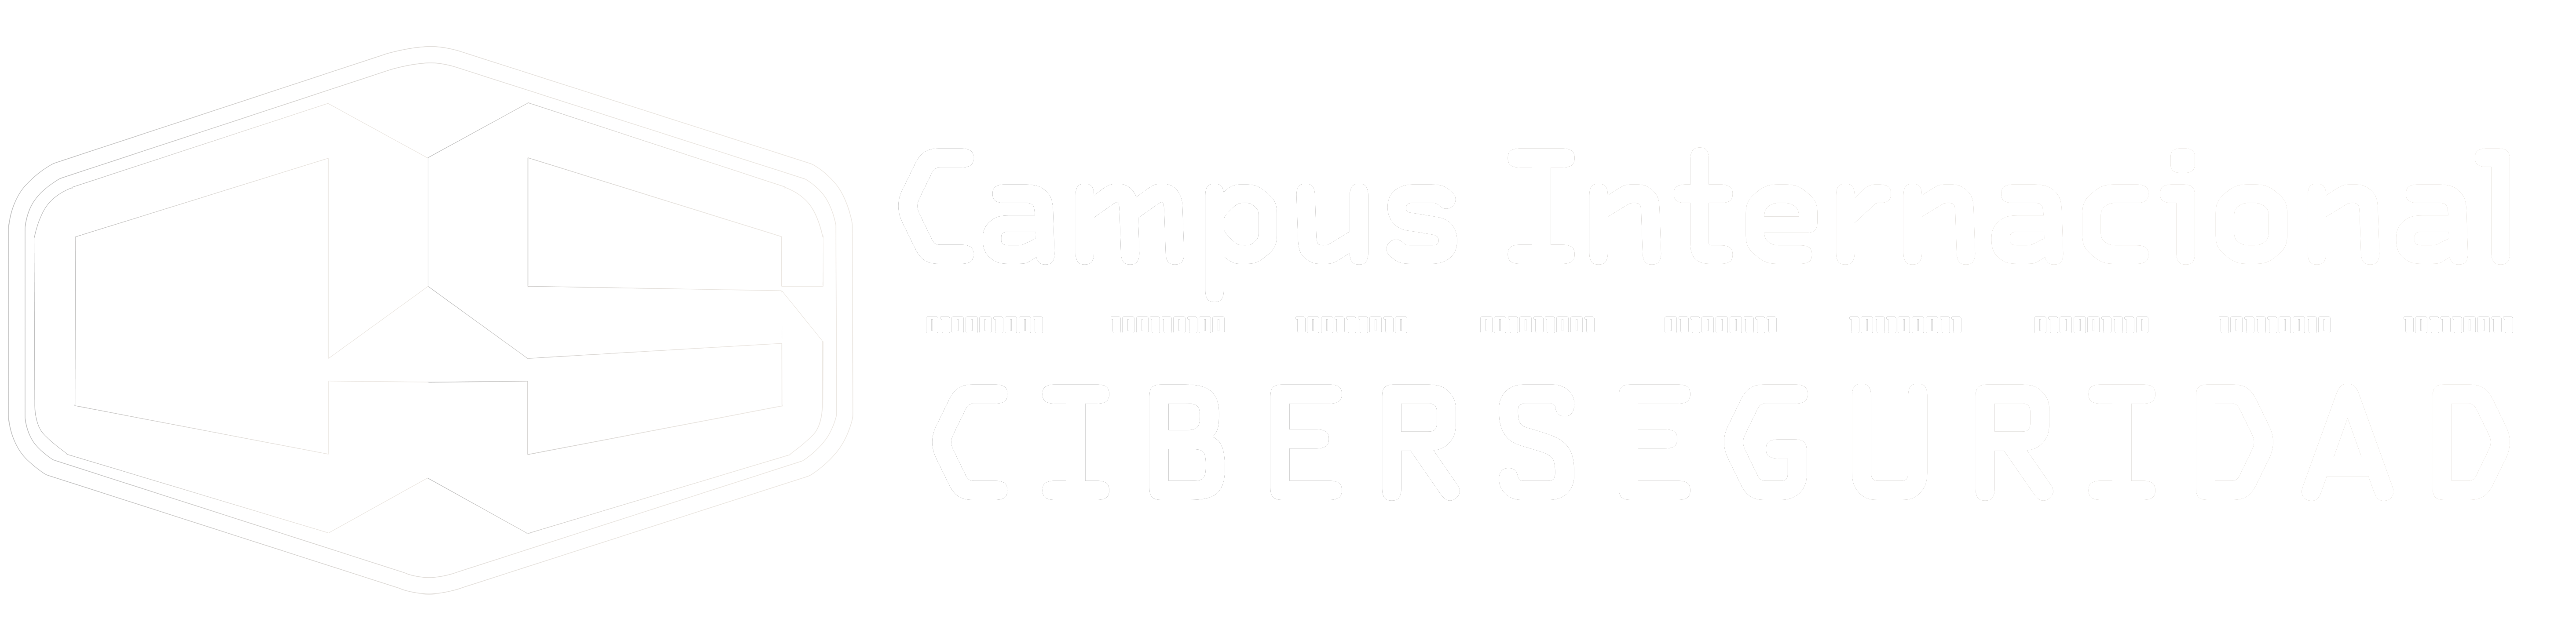 Campus de Ciberseguridad